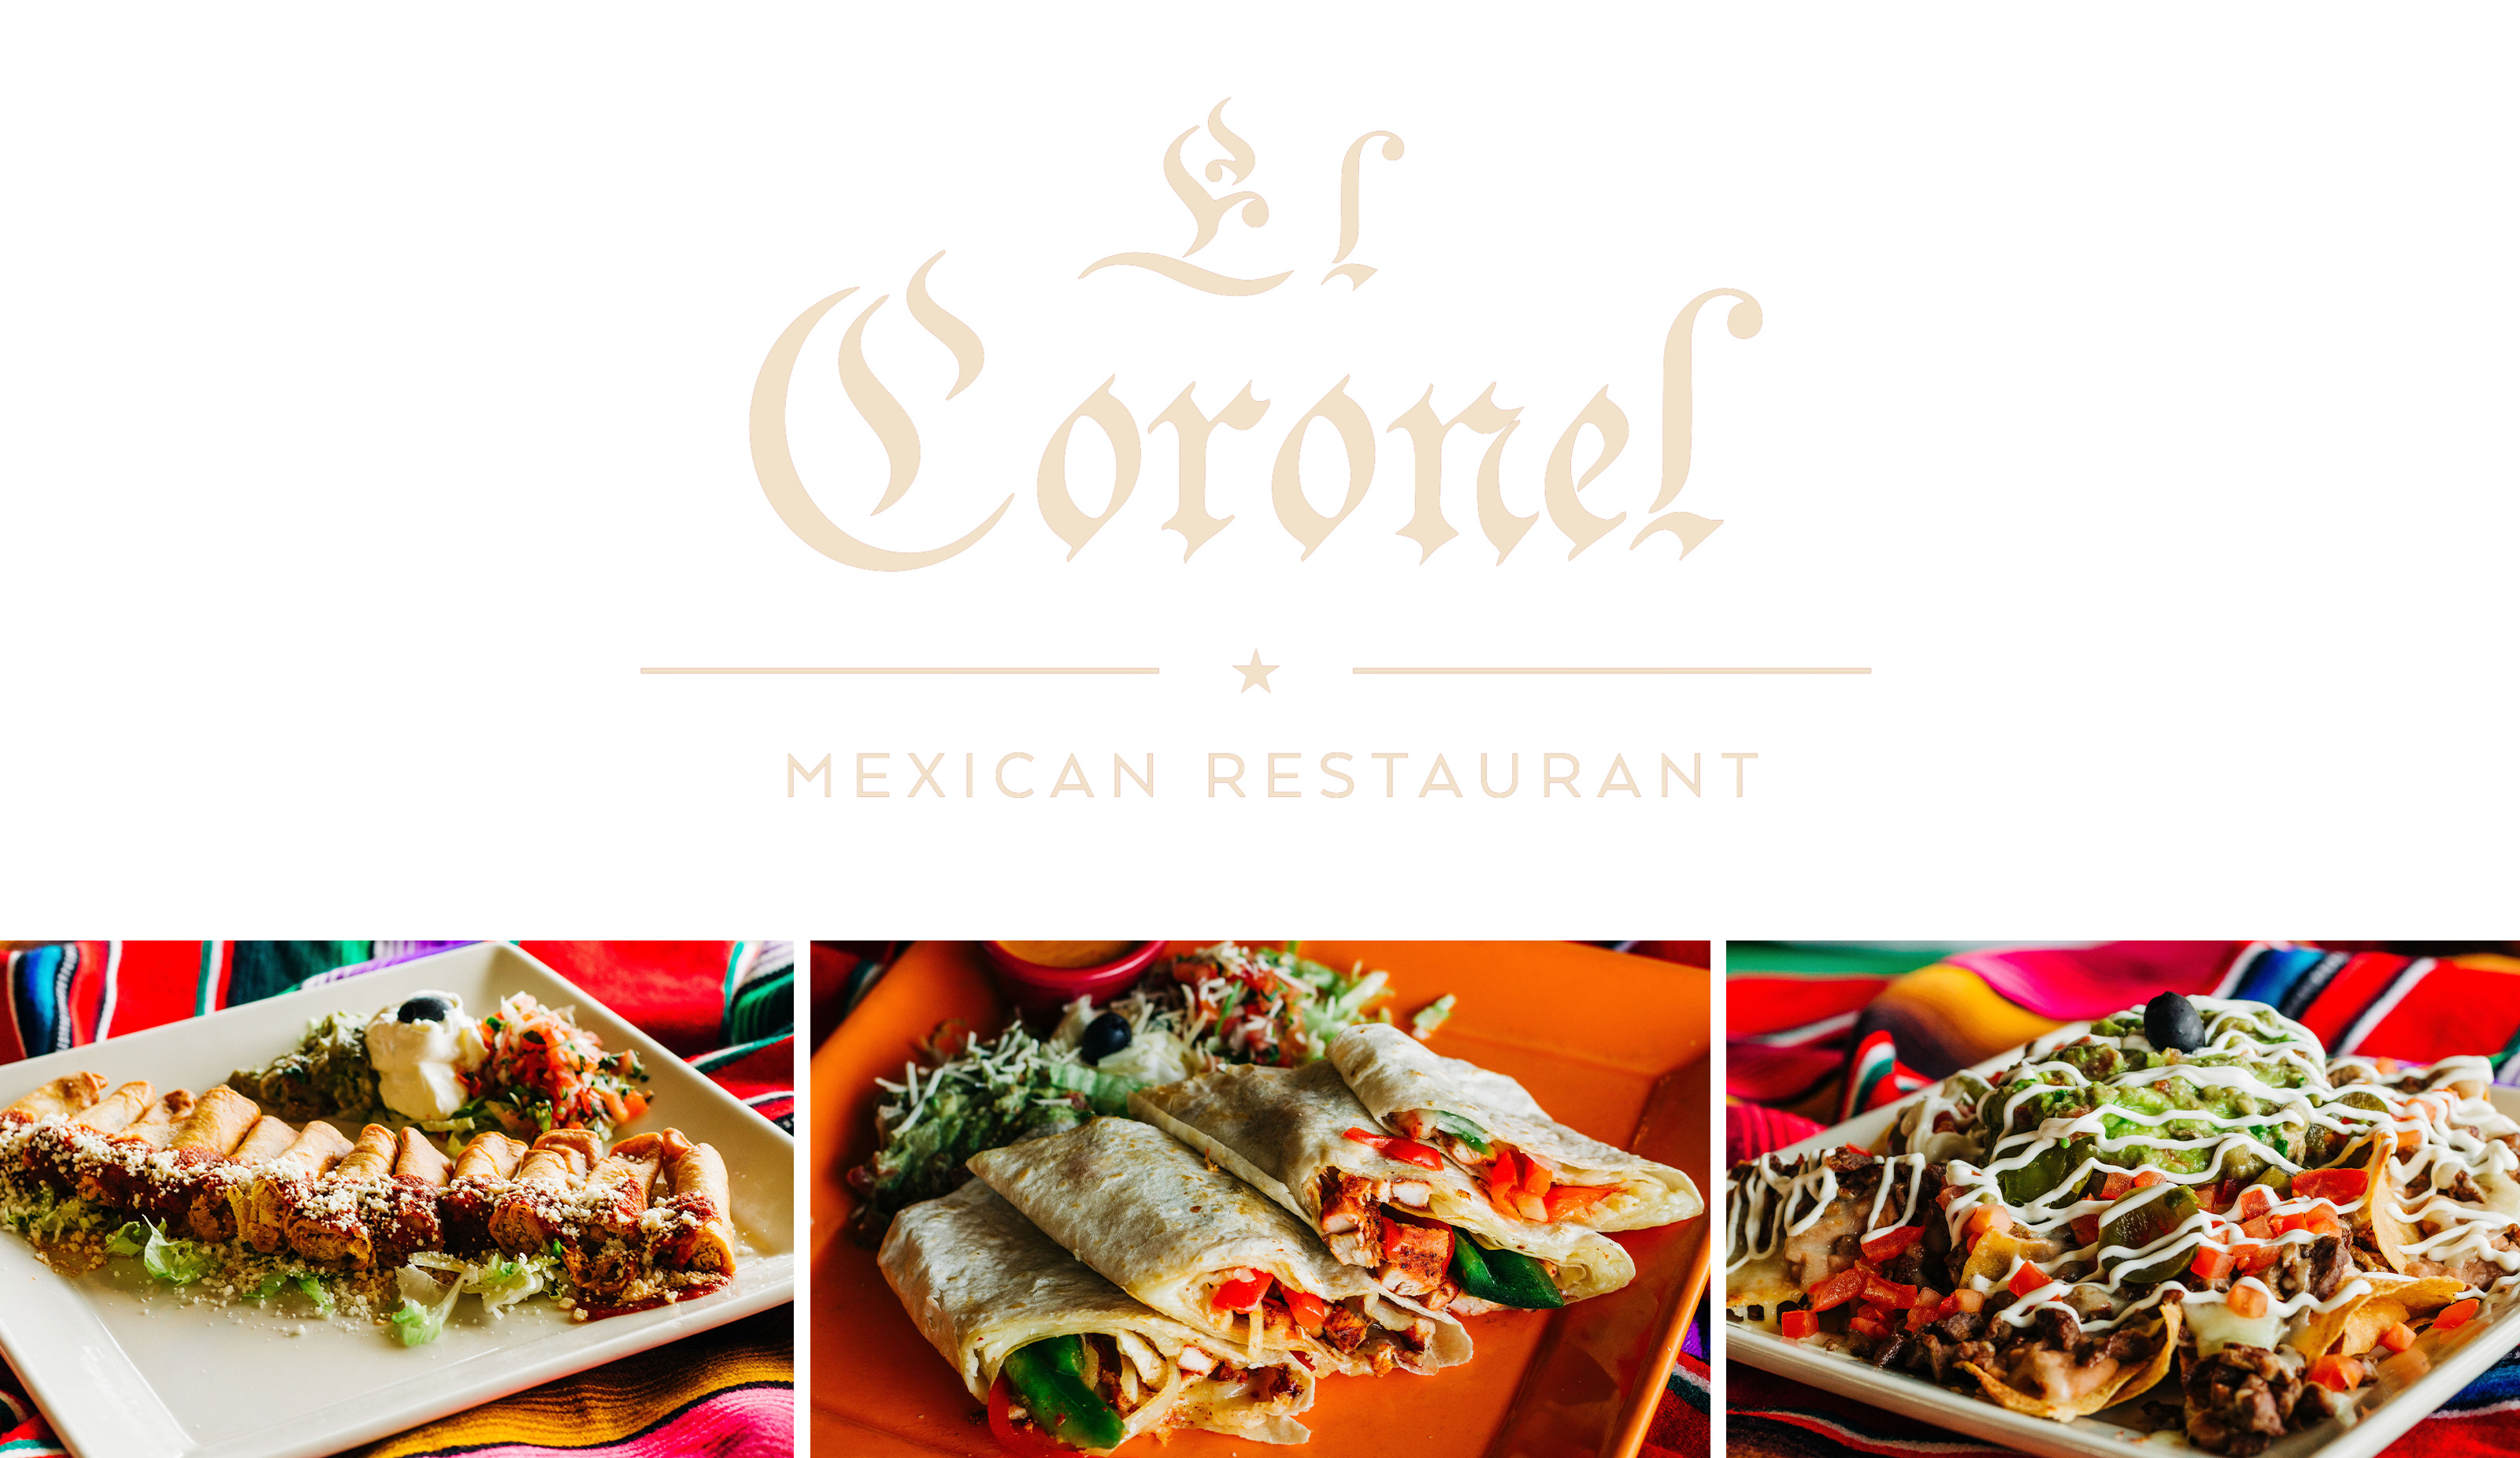 El Coronel Mexican Restaurant 